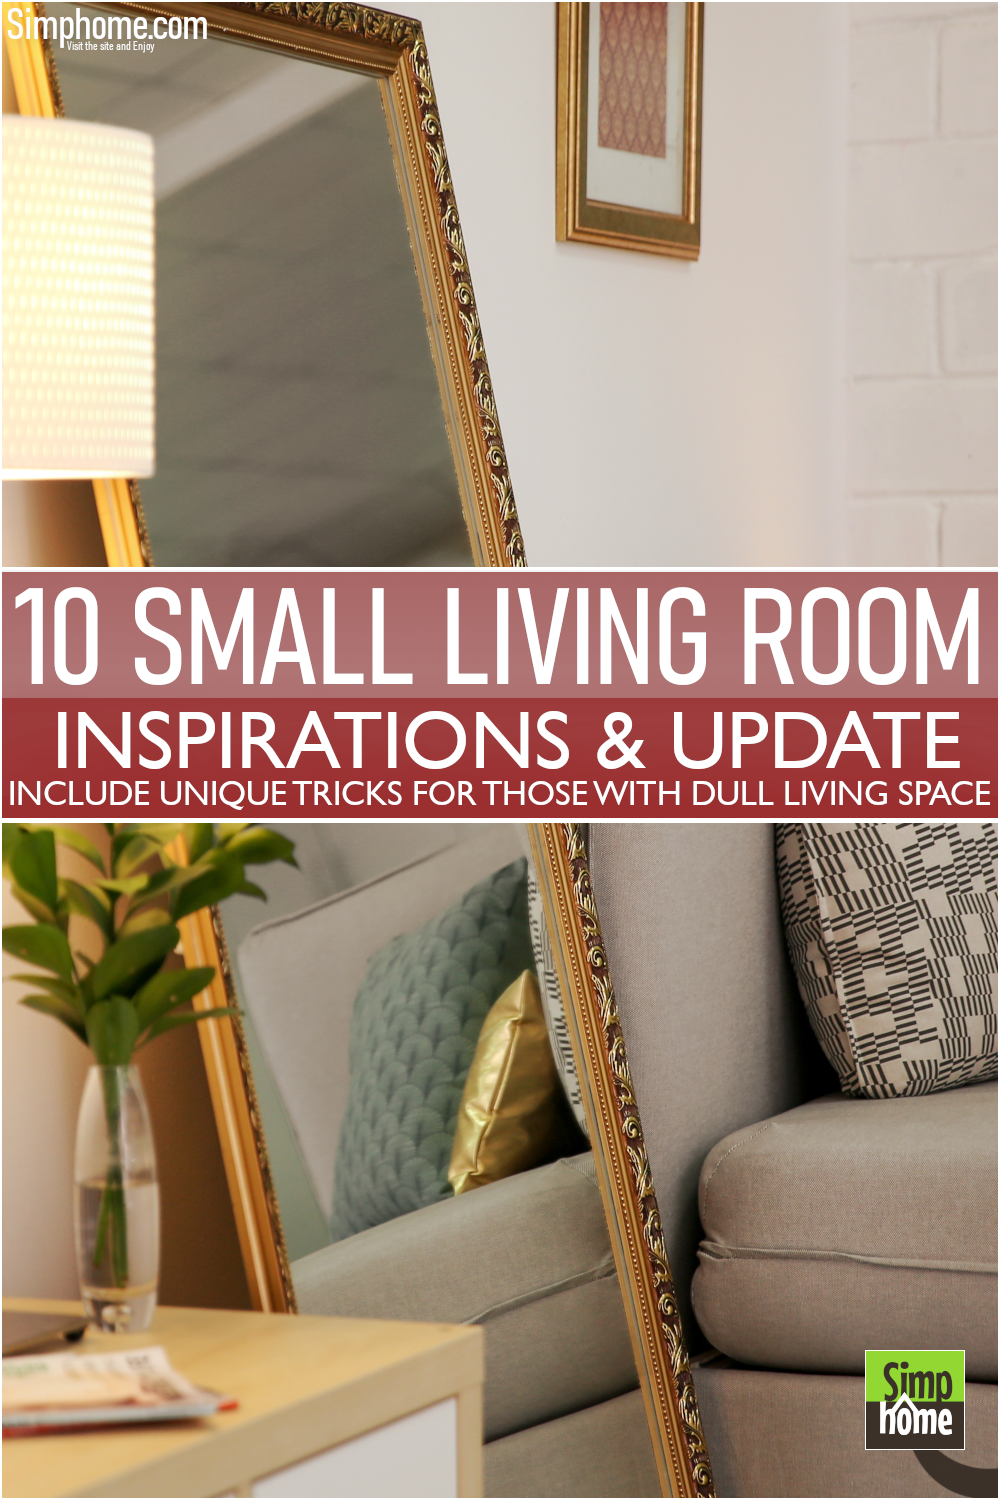 10 Small Living Room Inspo via Simphome.com